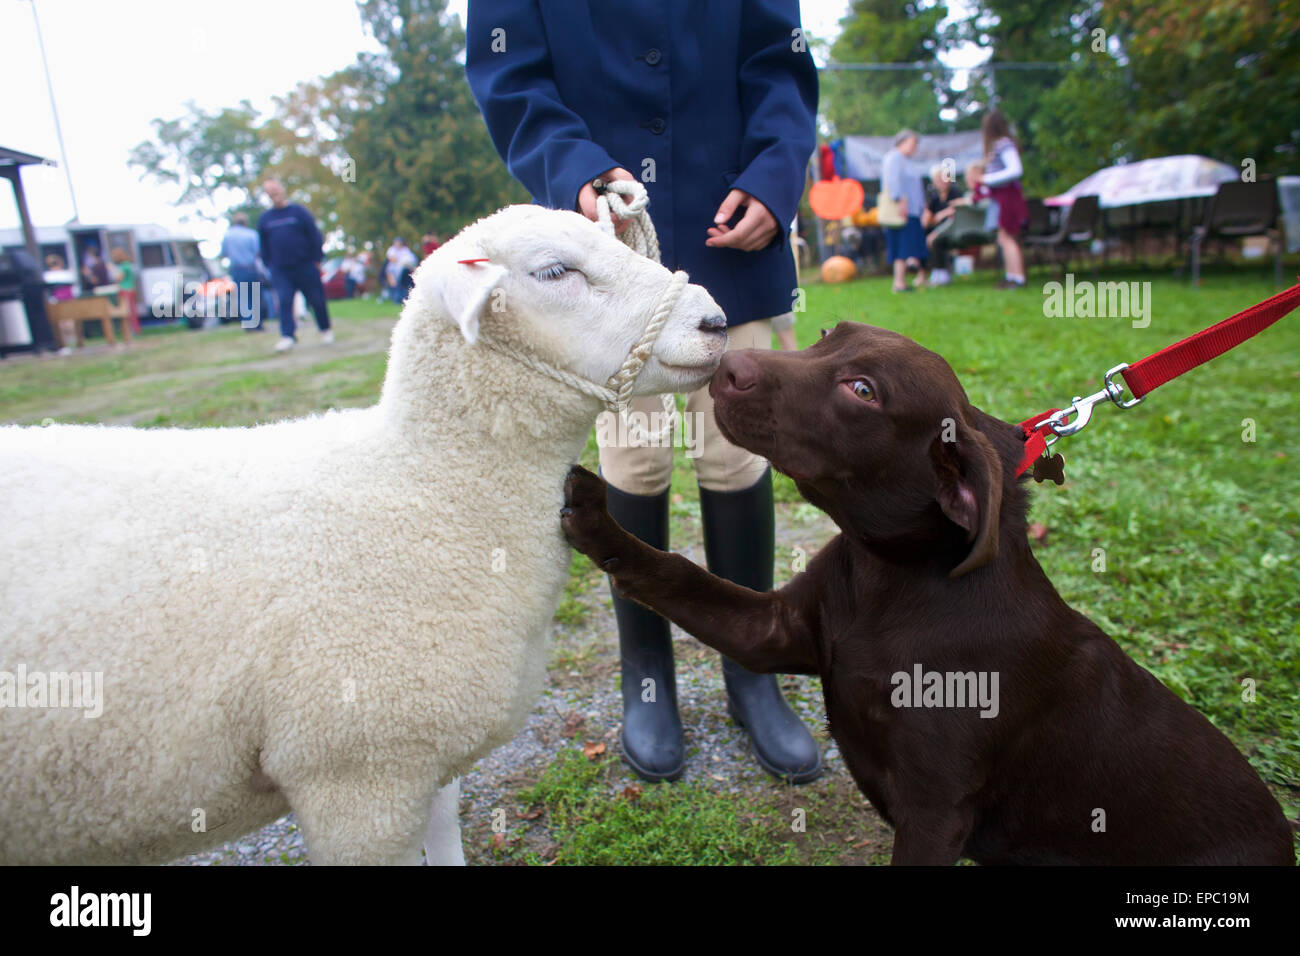 Dog and sheep interacting at Milford Fair; Milford, Ontario, Canada Stock Photo